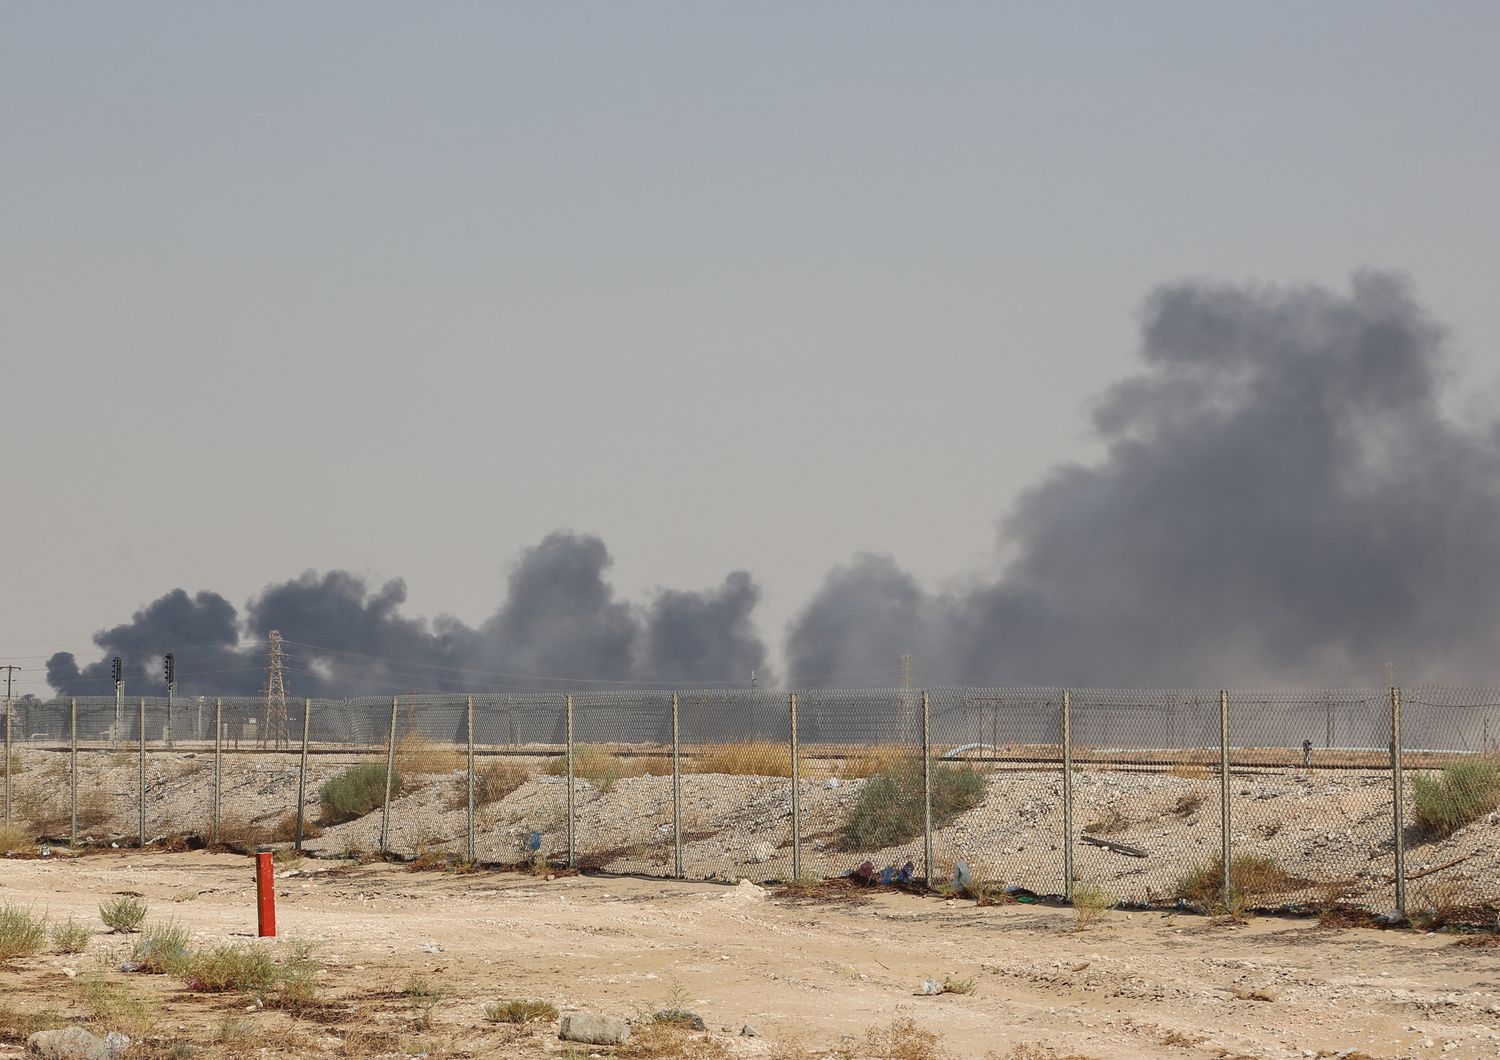 L'incendio nell'impianto della Aramco di Abqaiq